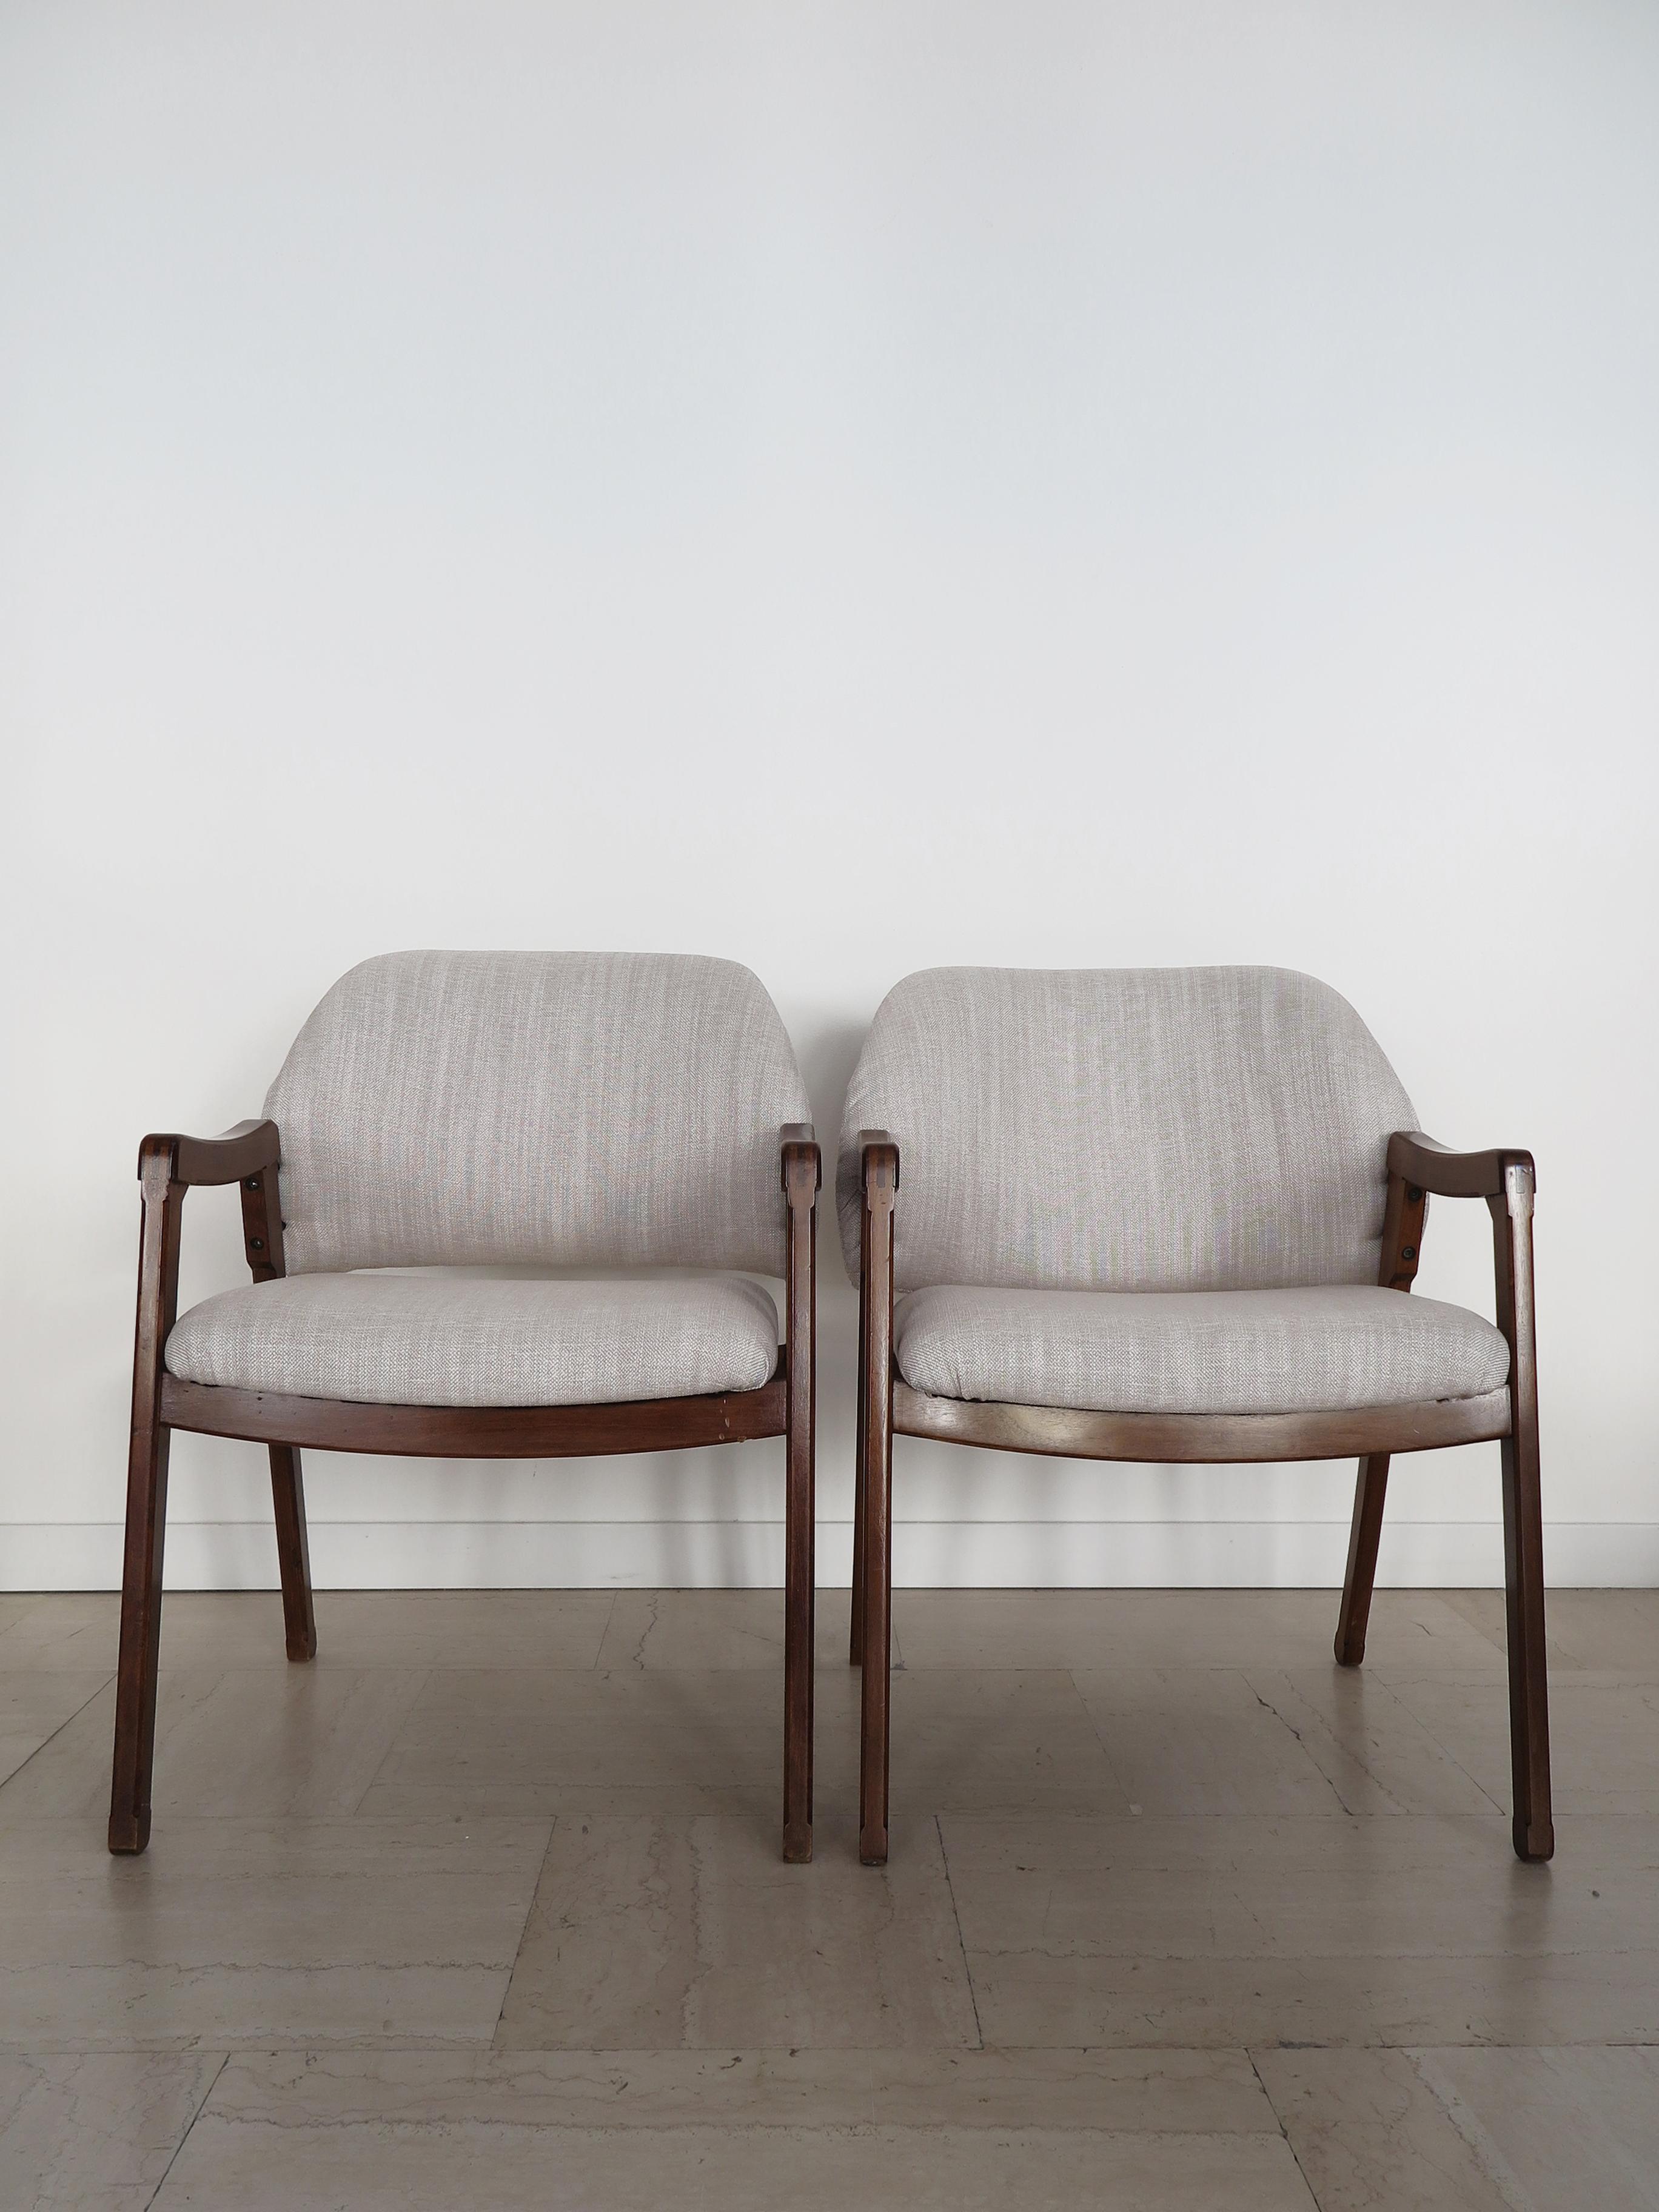 Italienisches Mid-Century Modern Design Set mit zwei Sesseln Modell 814, entworfen von Ico Parisi für Cassina im Jahr 1961, Struktur aus Massivholz und neuer Stoffbezug, Italien 1960er Jahre
Original Cassina Label in einem Sessel.

Bitte beachten